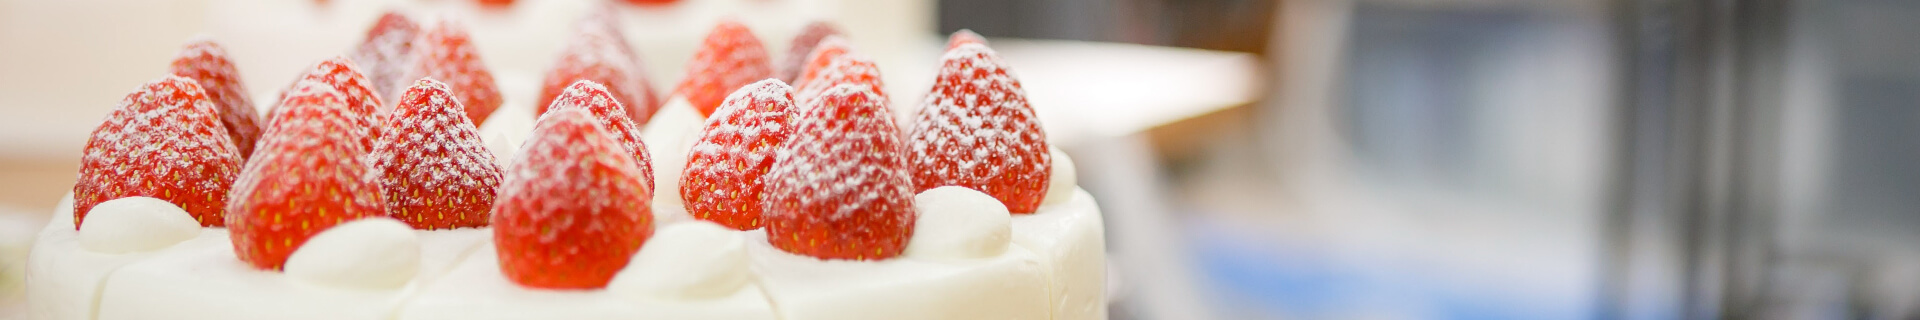 【おすすめケーキのご紹介】苺のショート - 松本市のケーキ屋 5HORN(ファイブホルン)【公式】